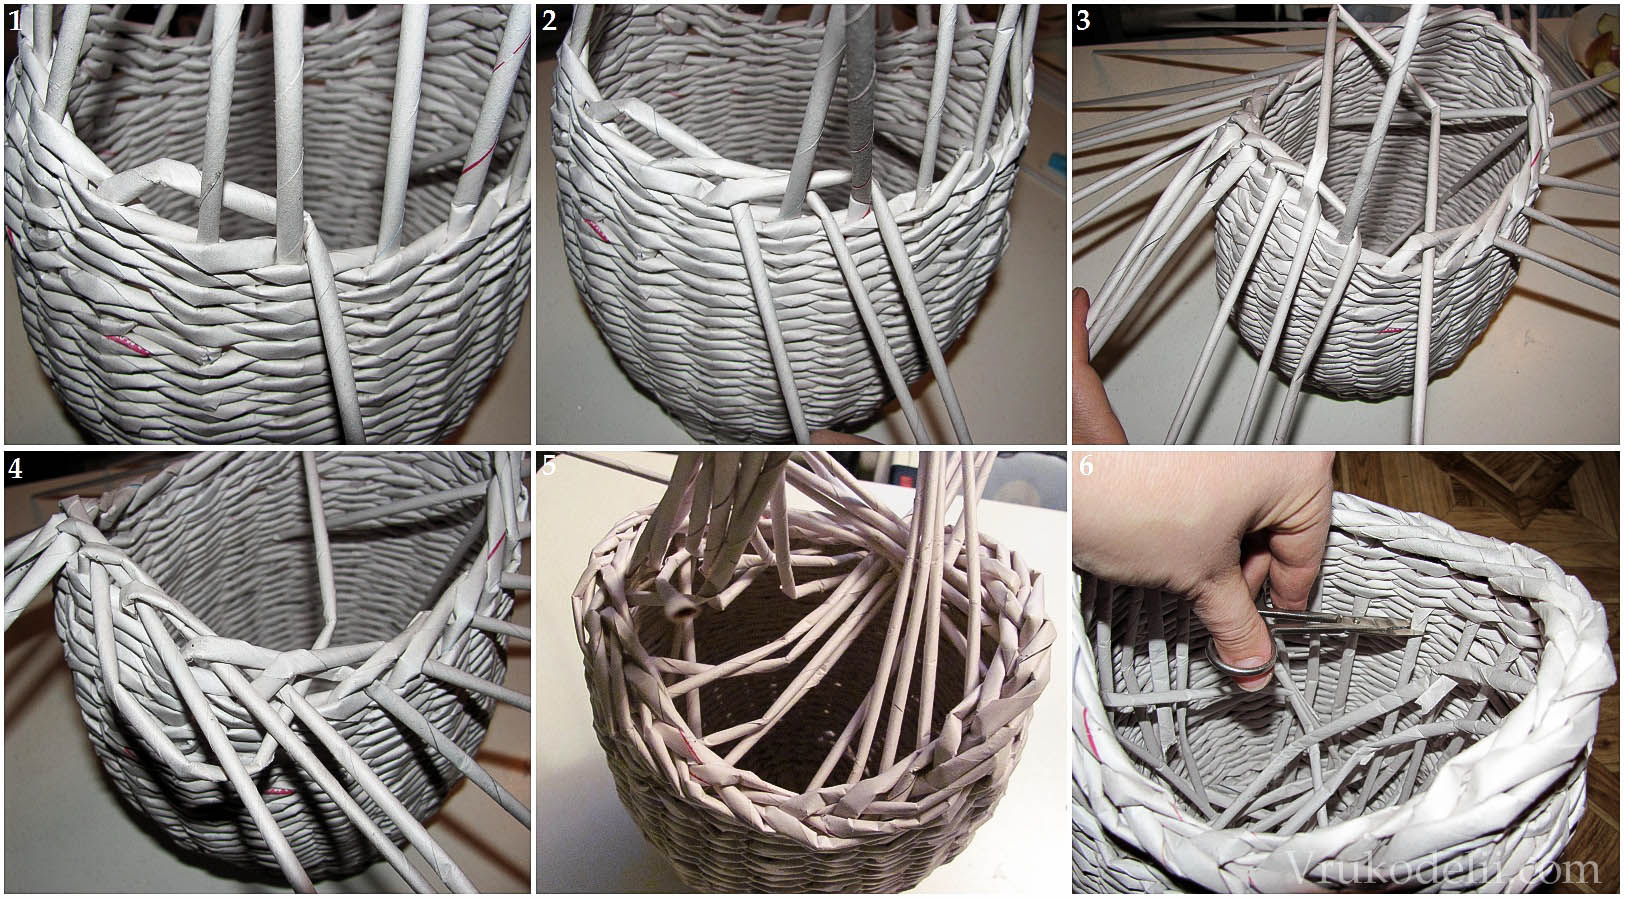 Плетение ваз из газетных трубочек: узоры, схемы, описание, мастер класс, фото